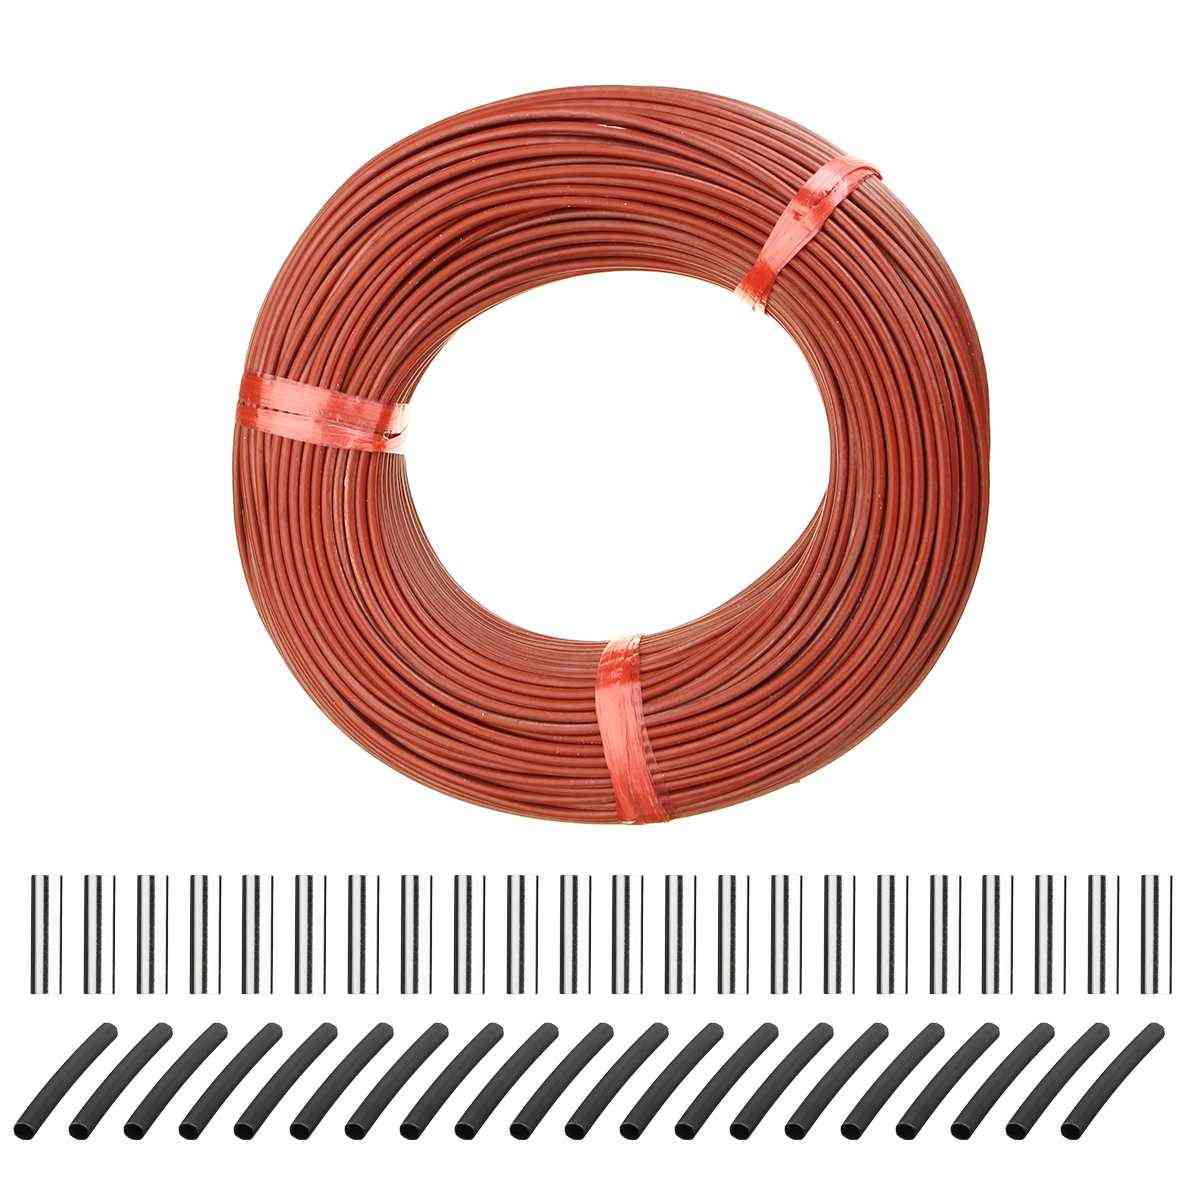 100m infračervený podlahový topný kabel z uhlíkových vláken